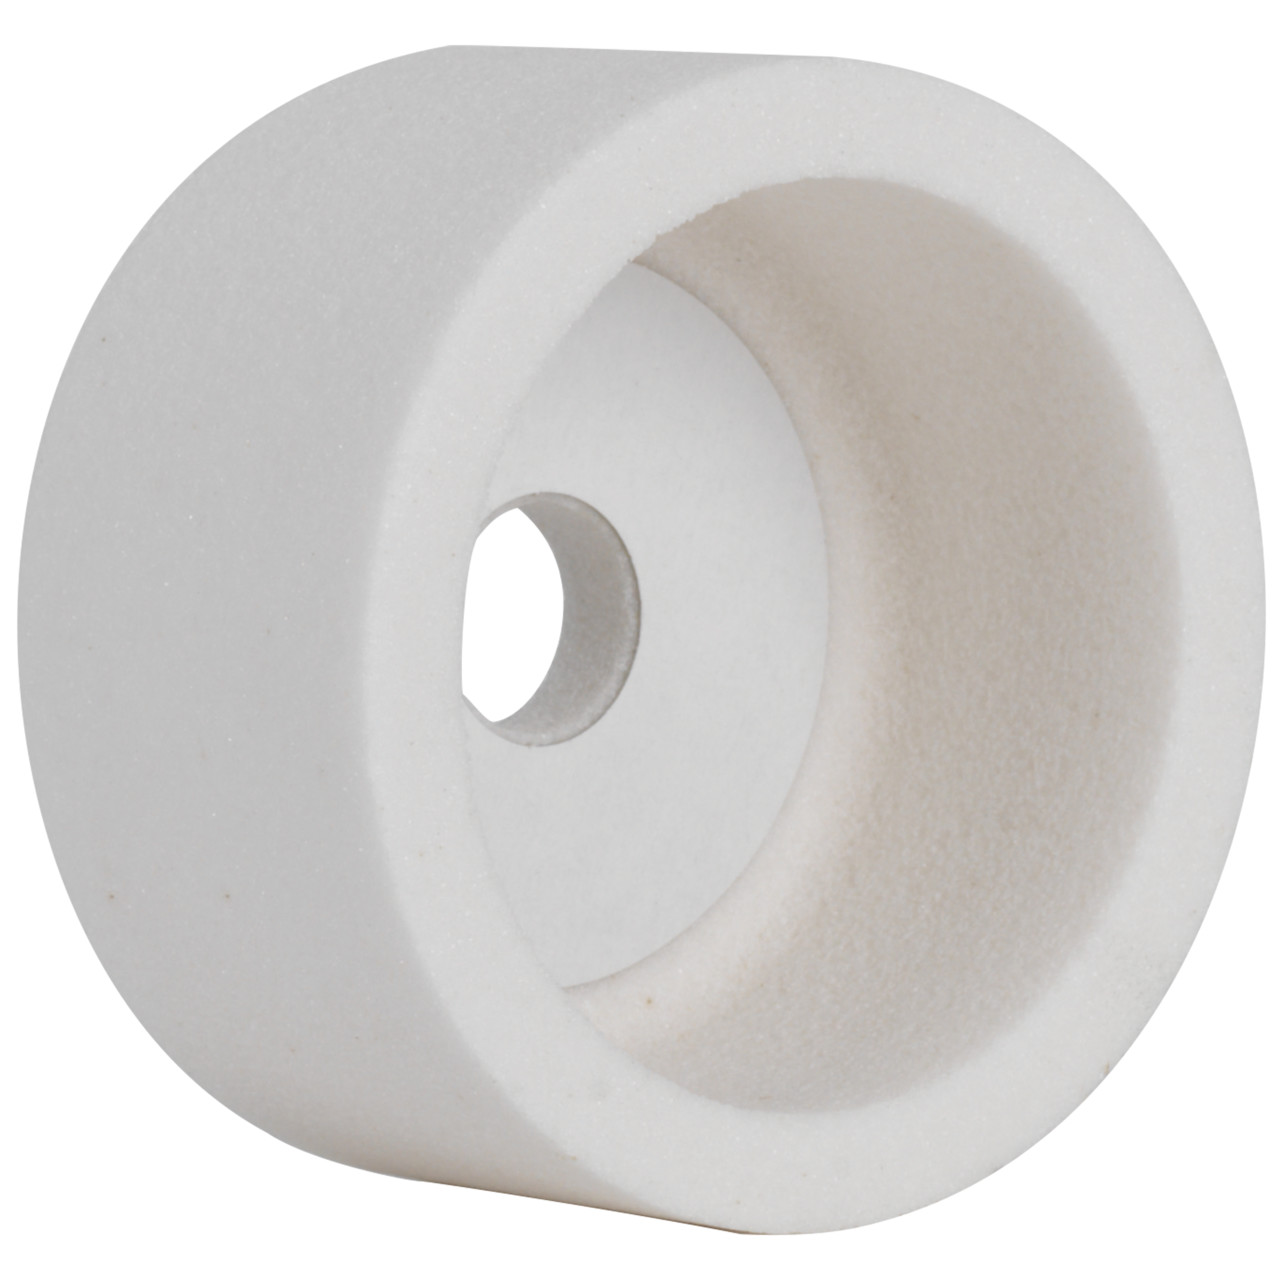 Tyrolit ceramica convenzionale per la rettifica a secco DxDxH 100x50x20 Per acciai non legati e basso legati, acciai alto legati e HSS, forma: 6, Art. 5887